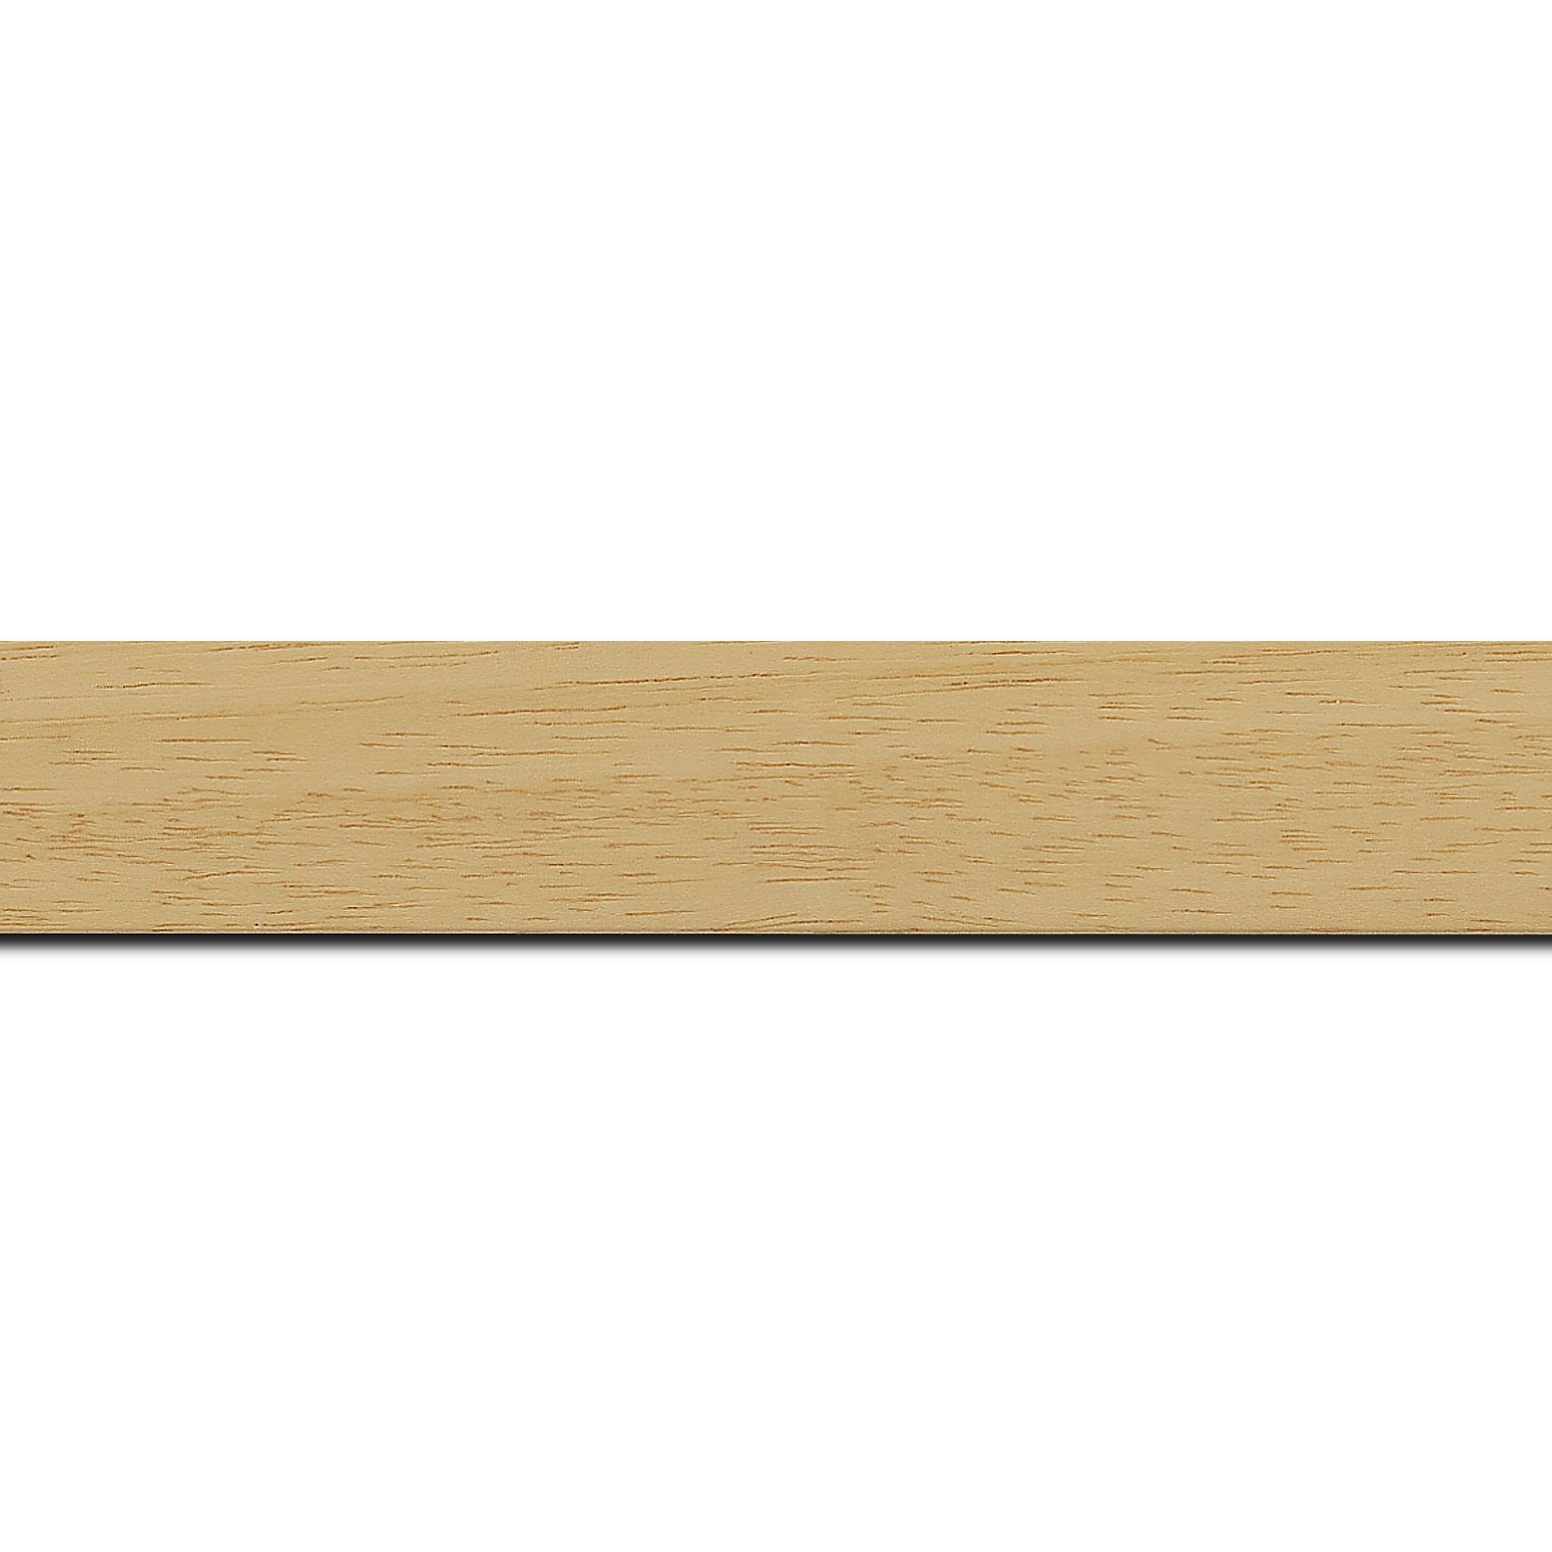 Pack par 12m, bois profil plat largeur 3cm couleur naturel satiné (longueur baguette pouvant varier entre 2.40m et 3m selon arrivage des bois)